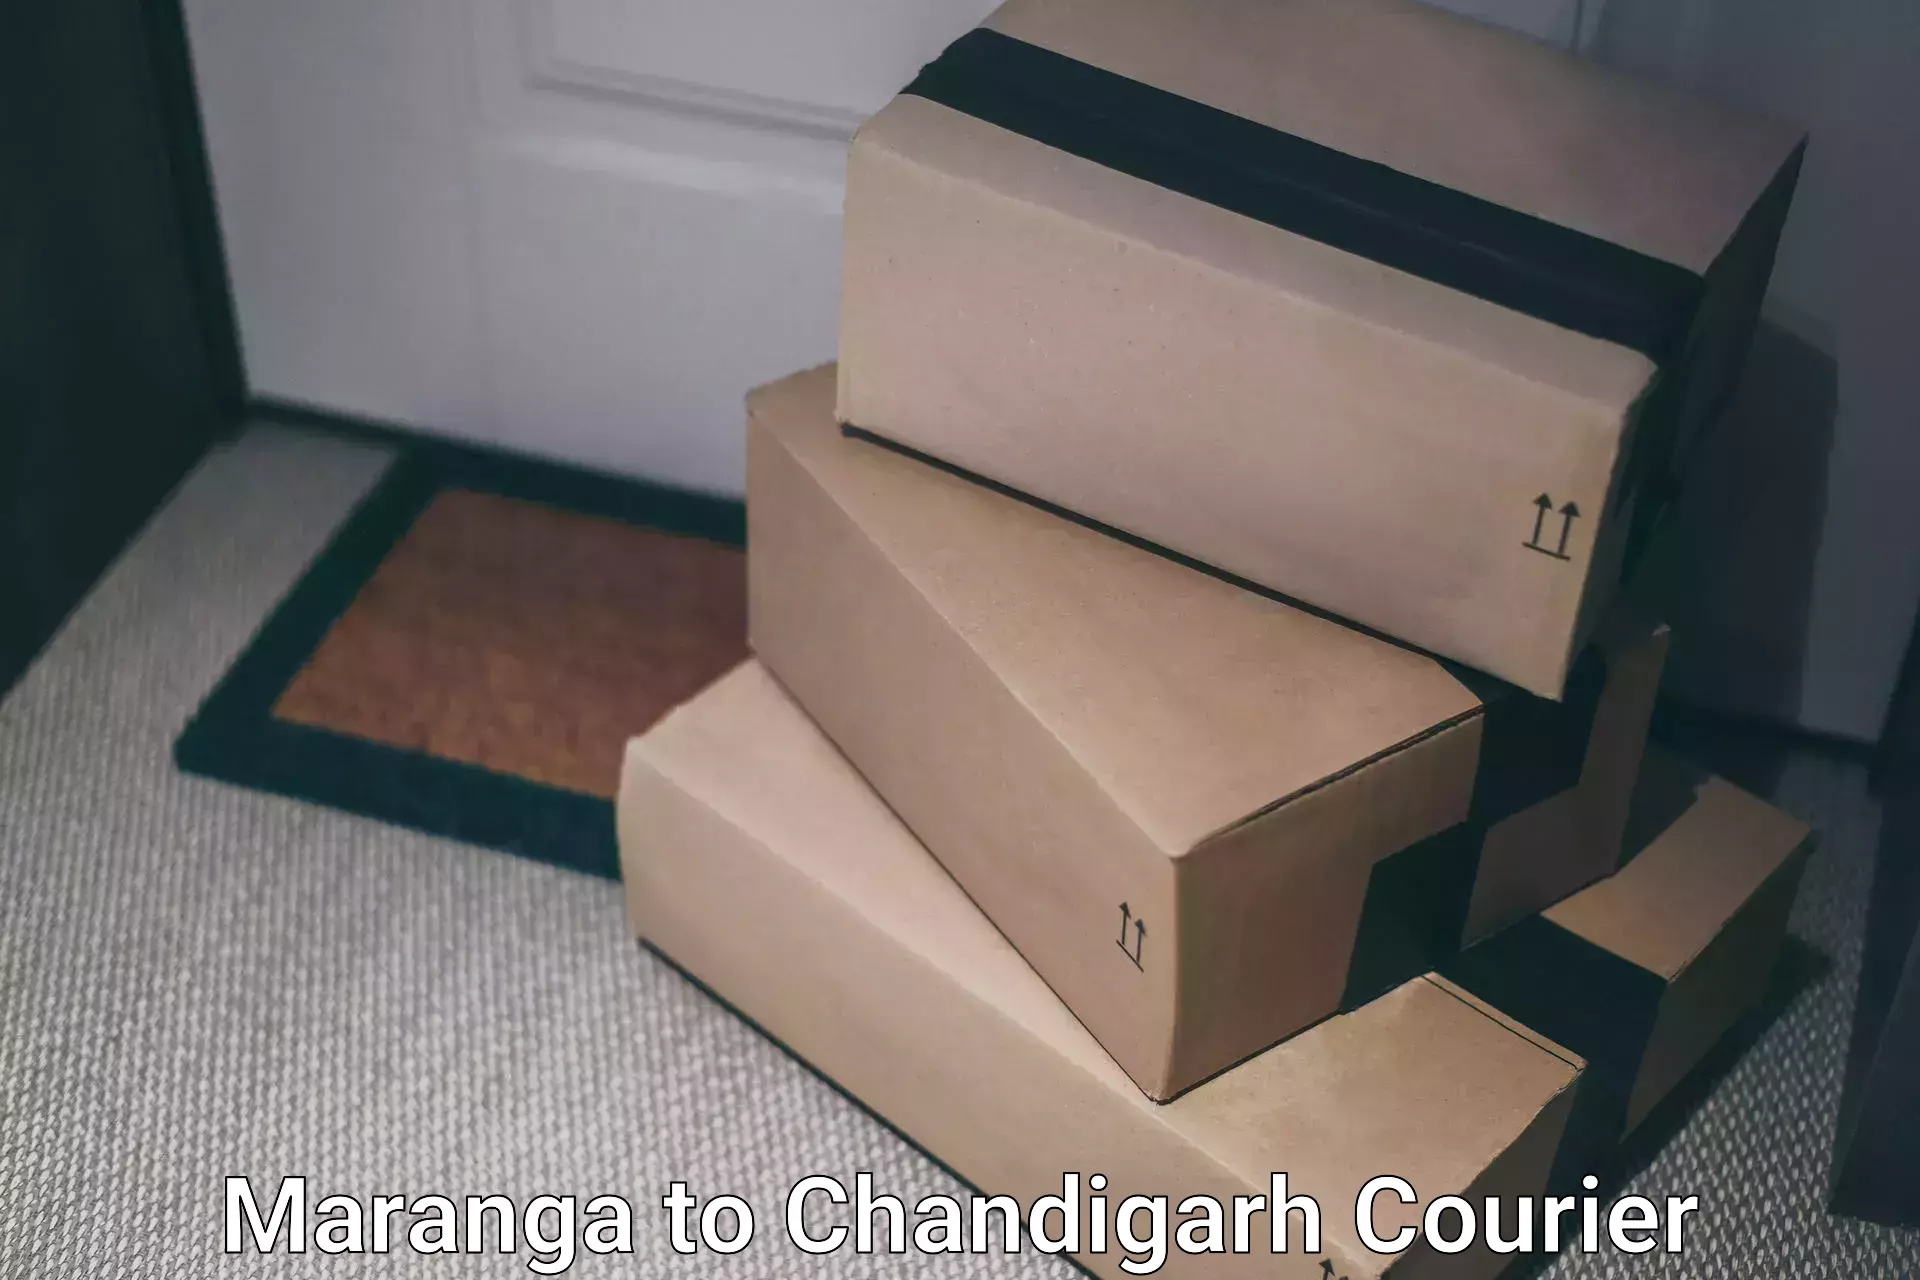 Global logistics network Maranga to Chandigarh